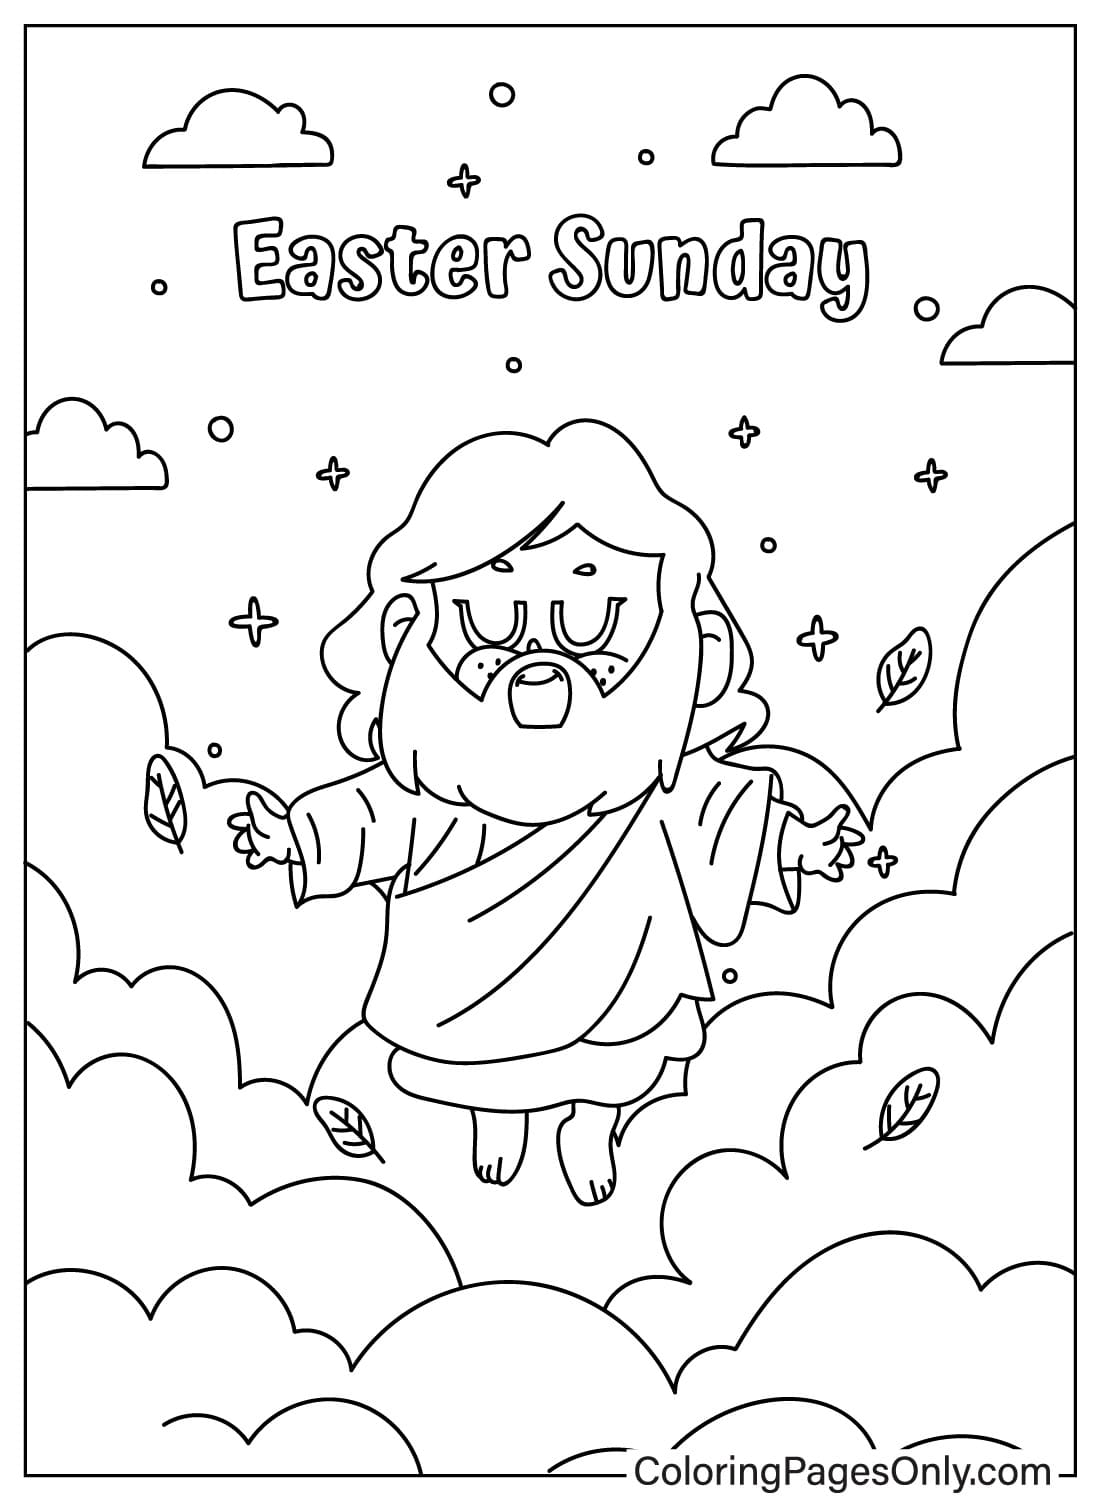 Pagina da colorare della Resurrezione di Gesù dalla Pasqua religiosa